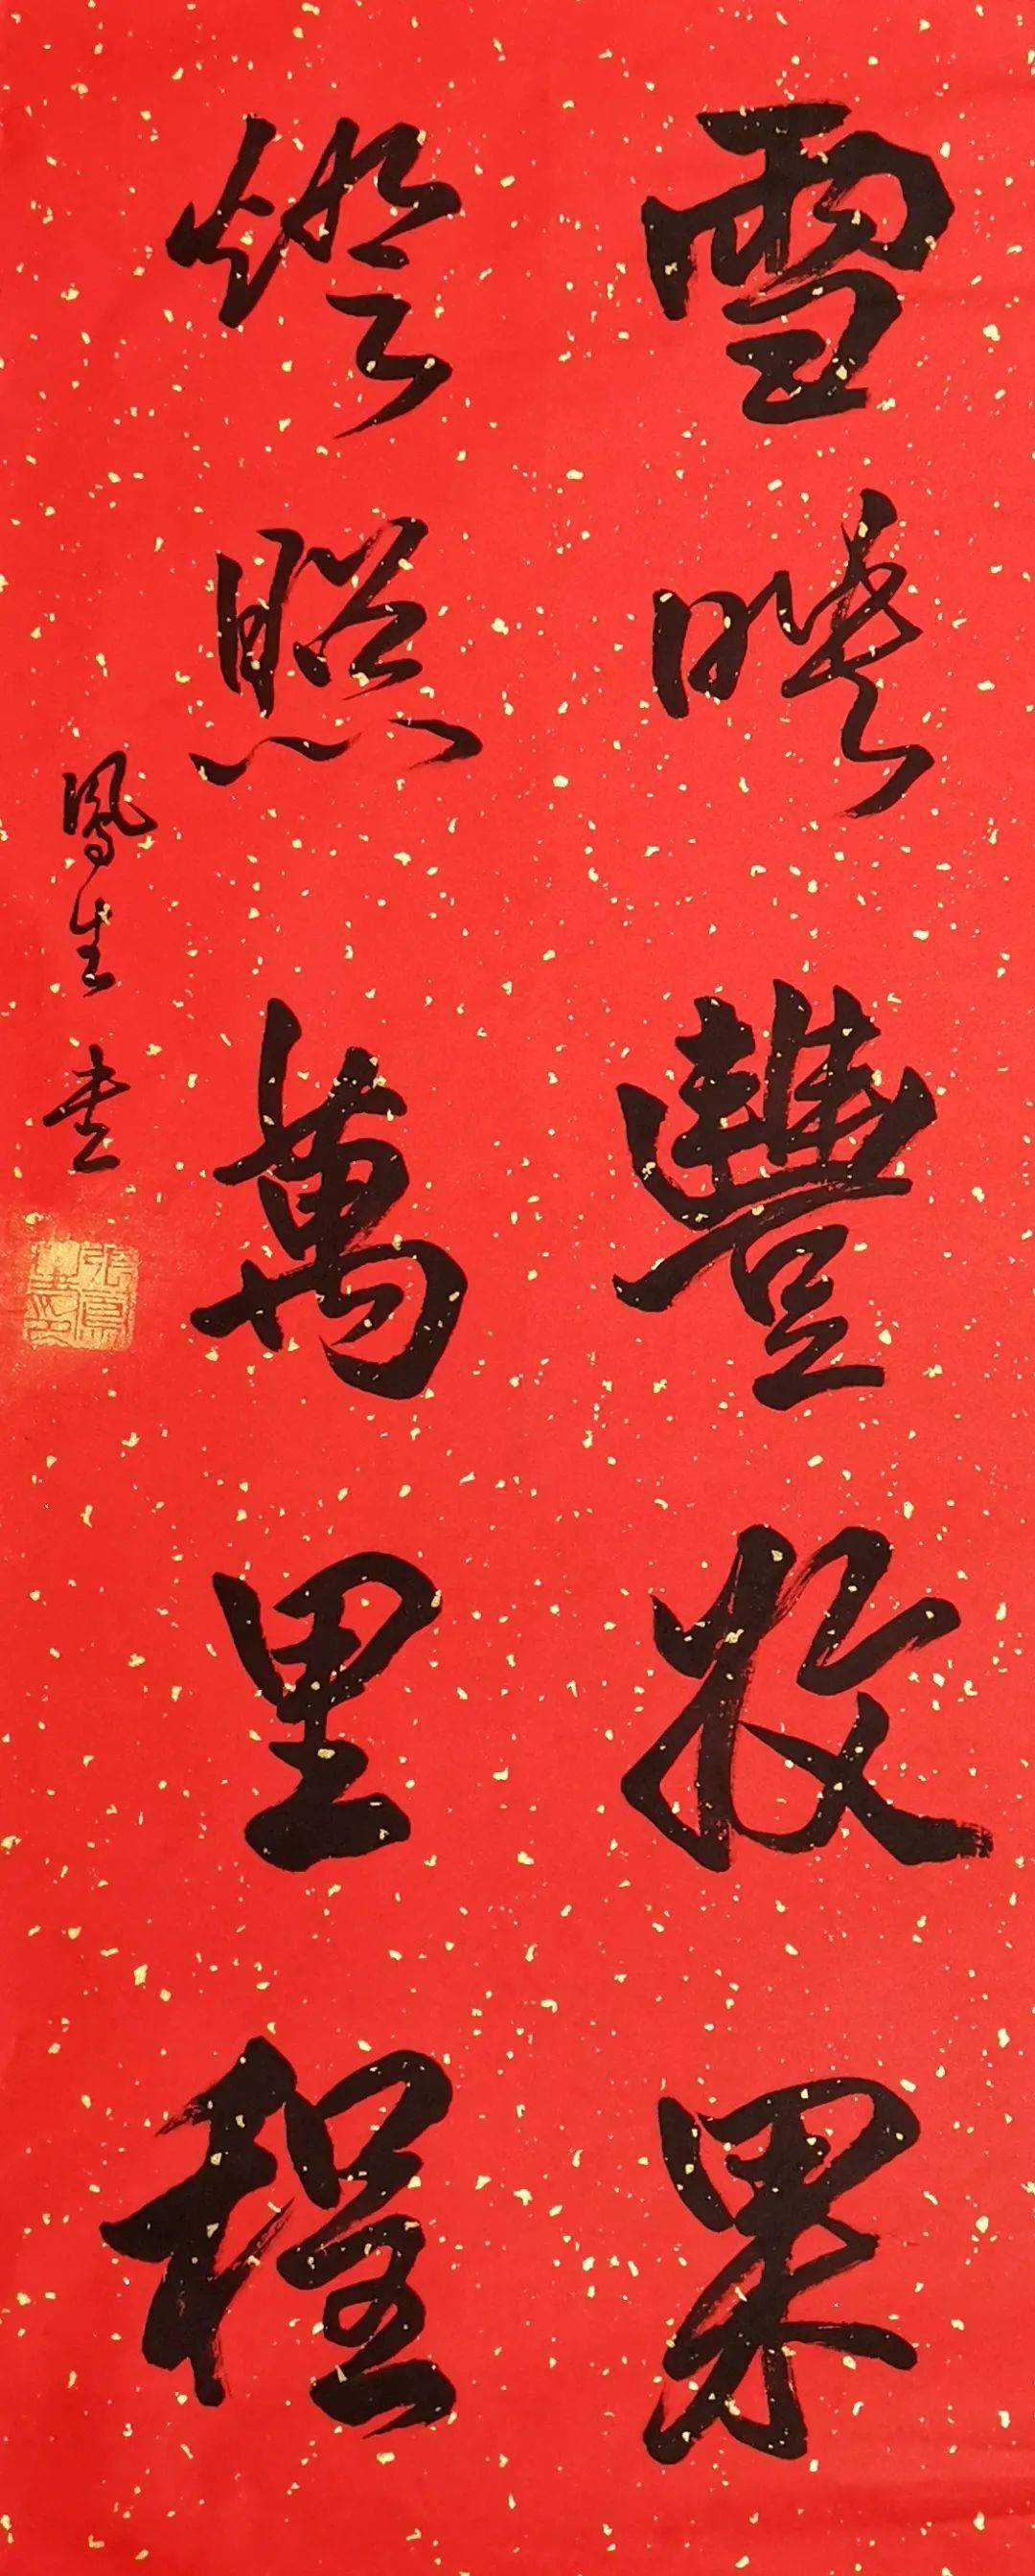 【微展】 花香鸟语庆新年 ——书法作品集萃